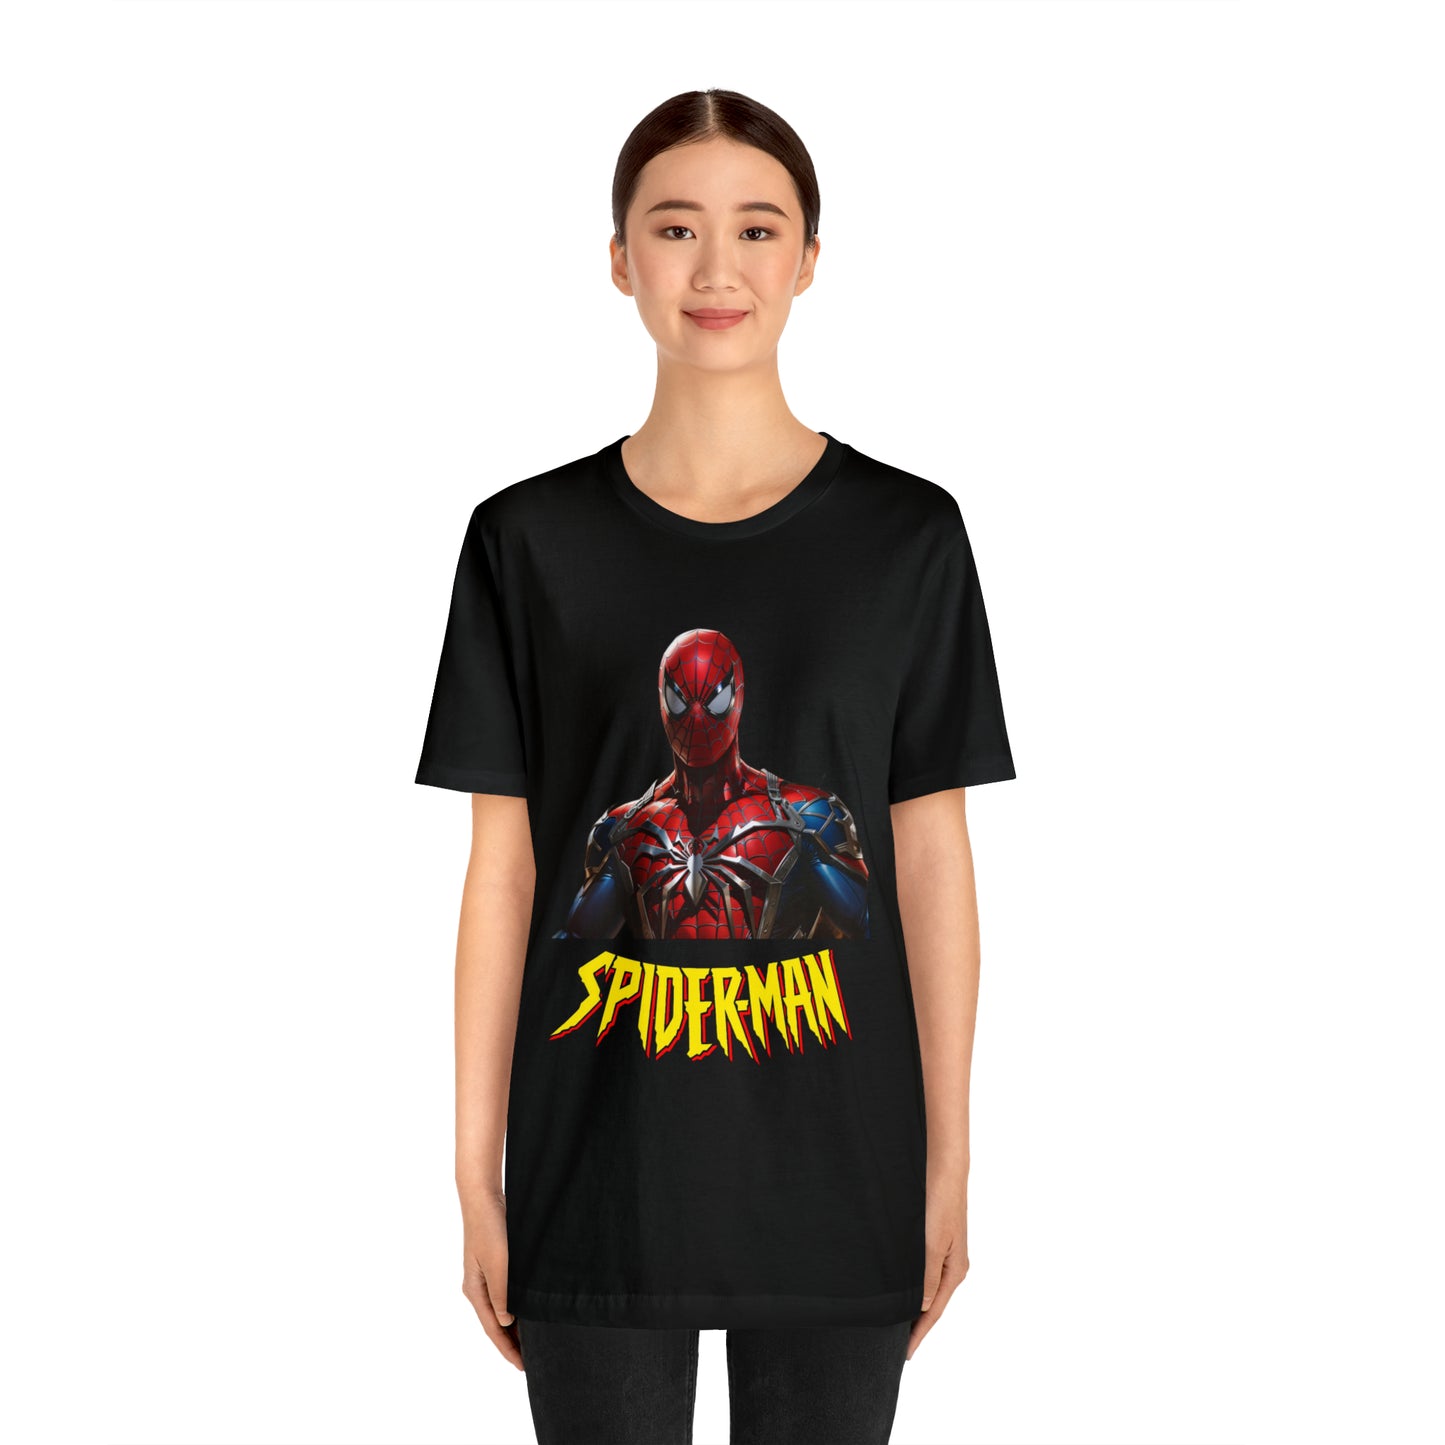 Spiderman Unisex Jersey Short Sleeve Tee